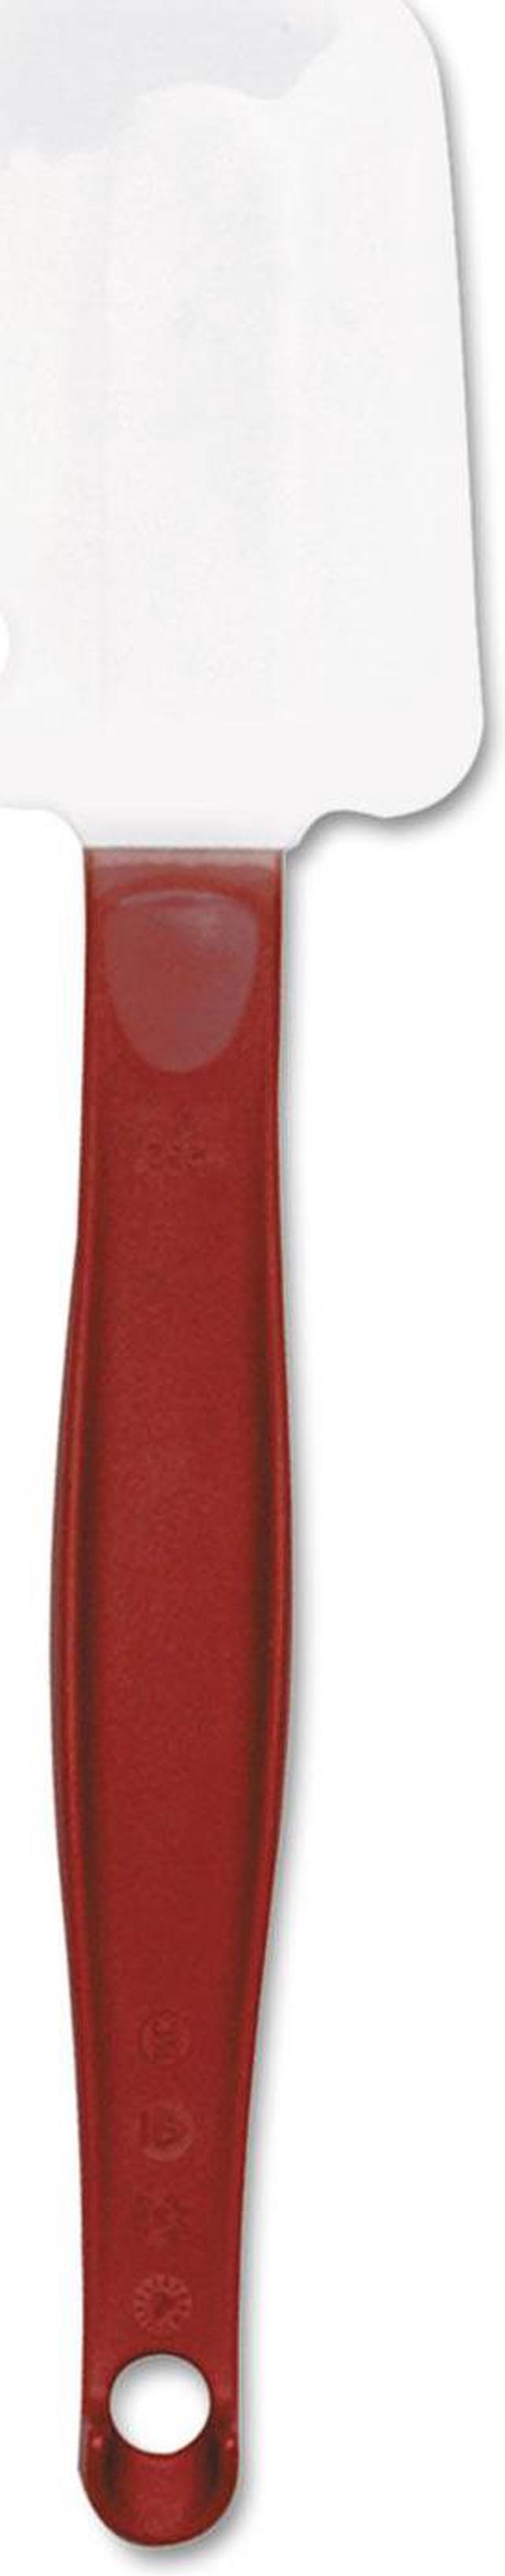 Rubbermaid FG1962000000 9 1/2 Scraper Spatula - Red Handle